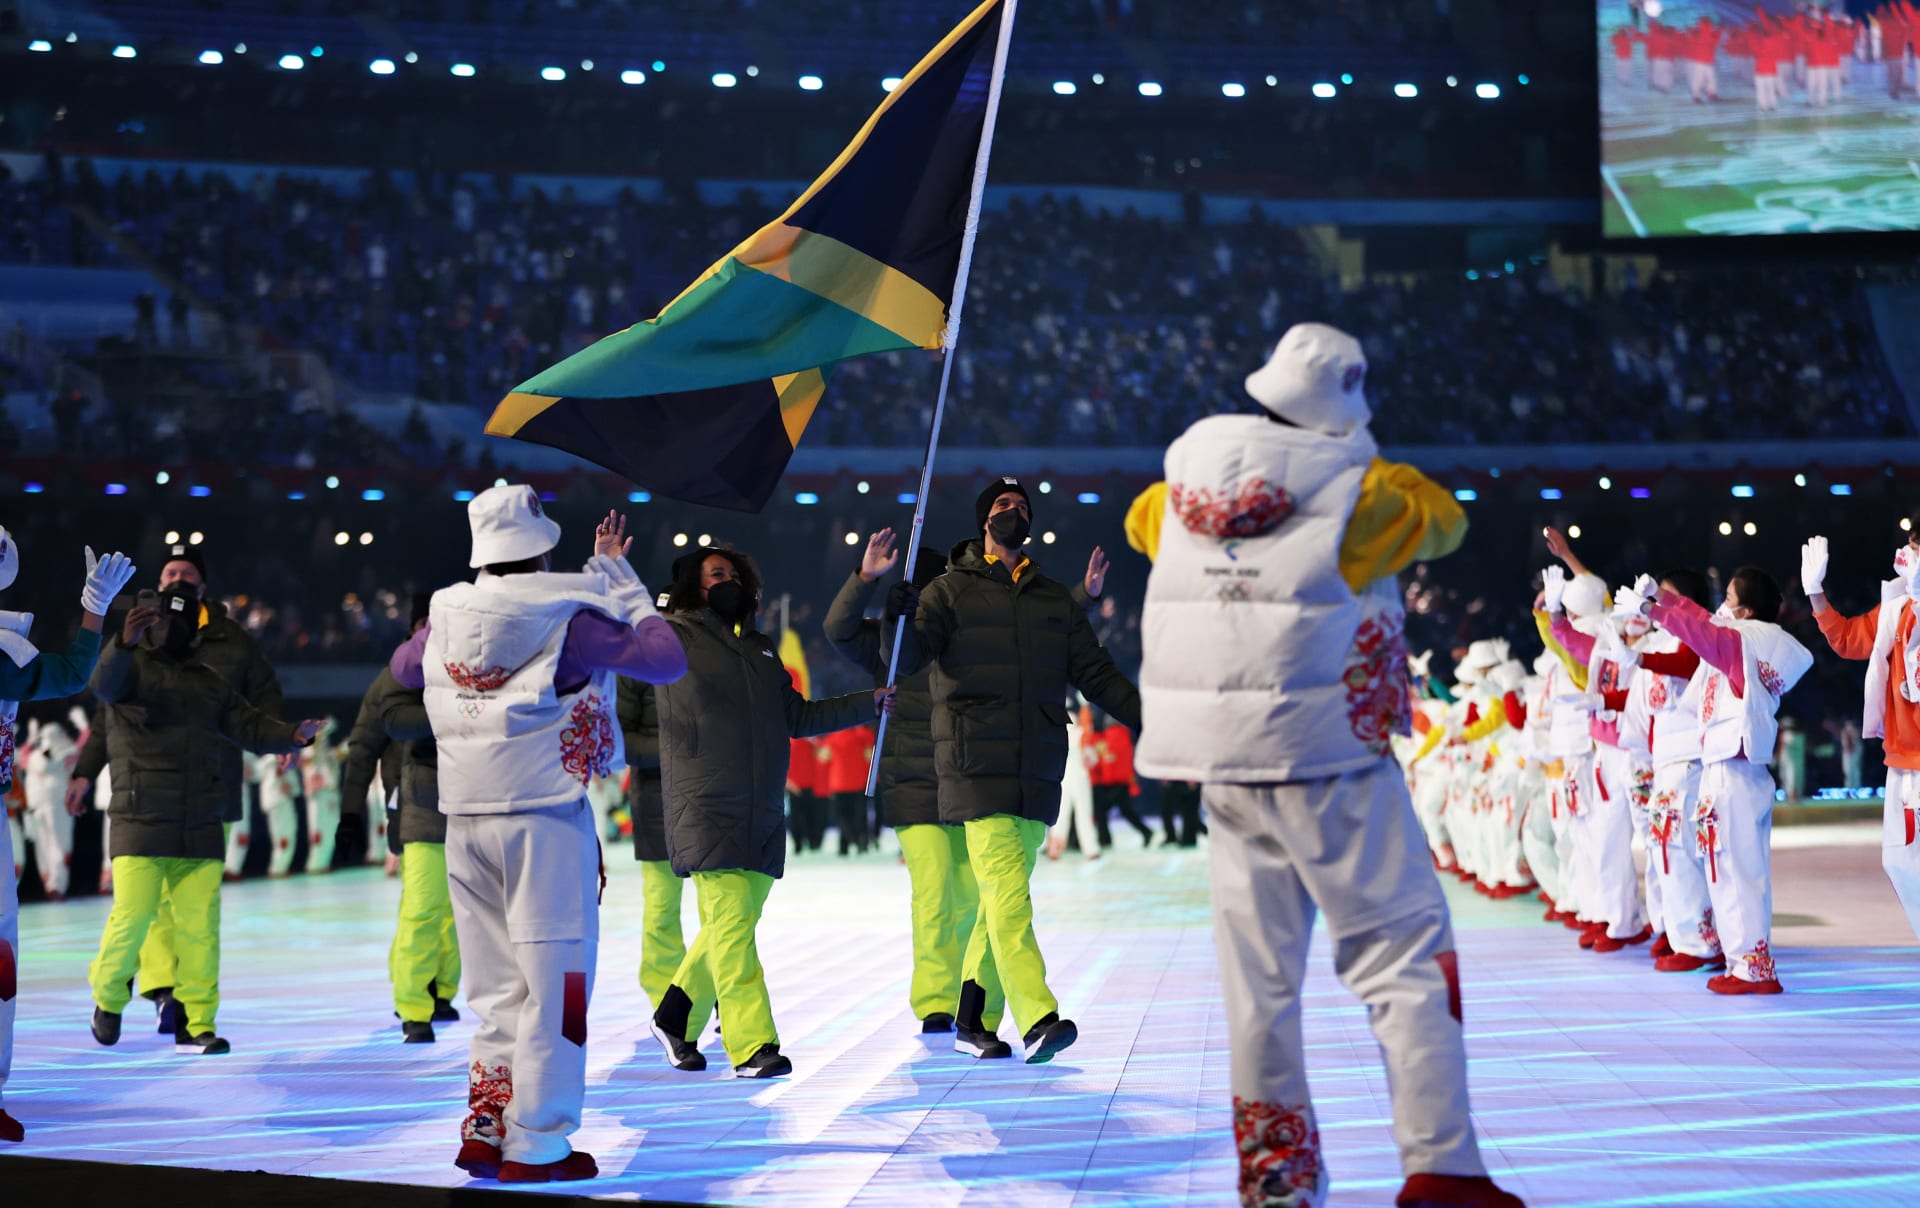 Benjamin Alexander se stal jedním z vlajkonošů jamajské výpravy při zahajovacím ceremoniálu v Pekingu.